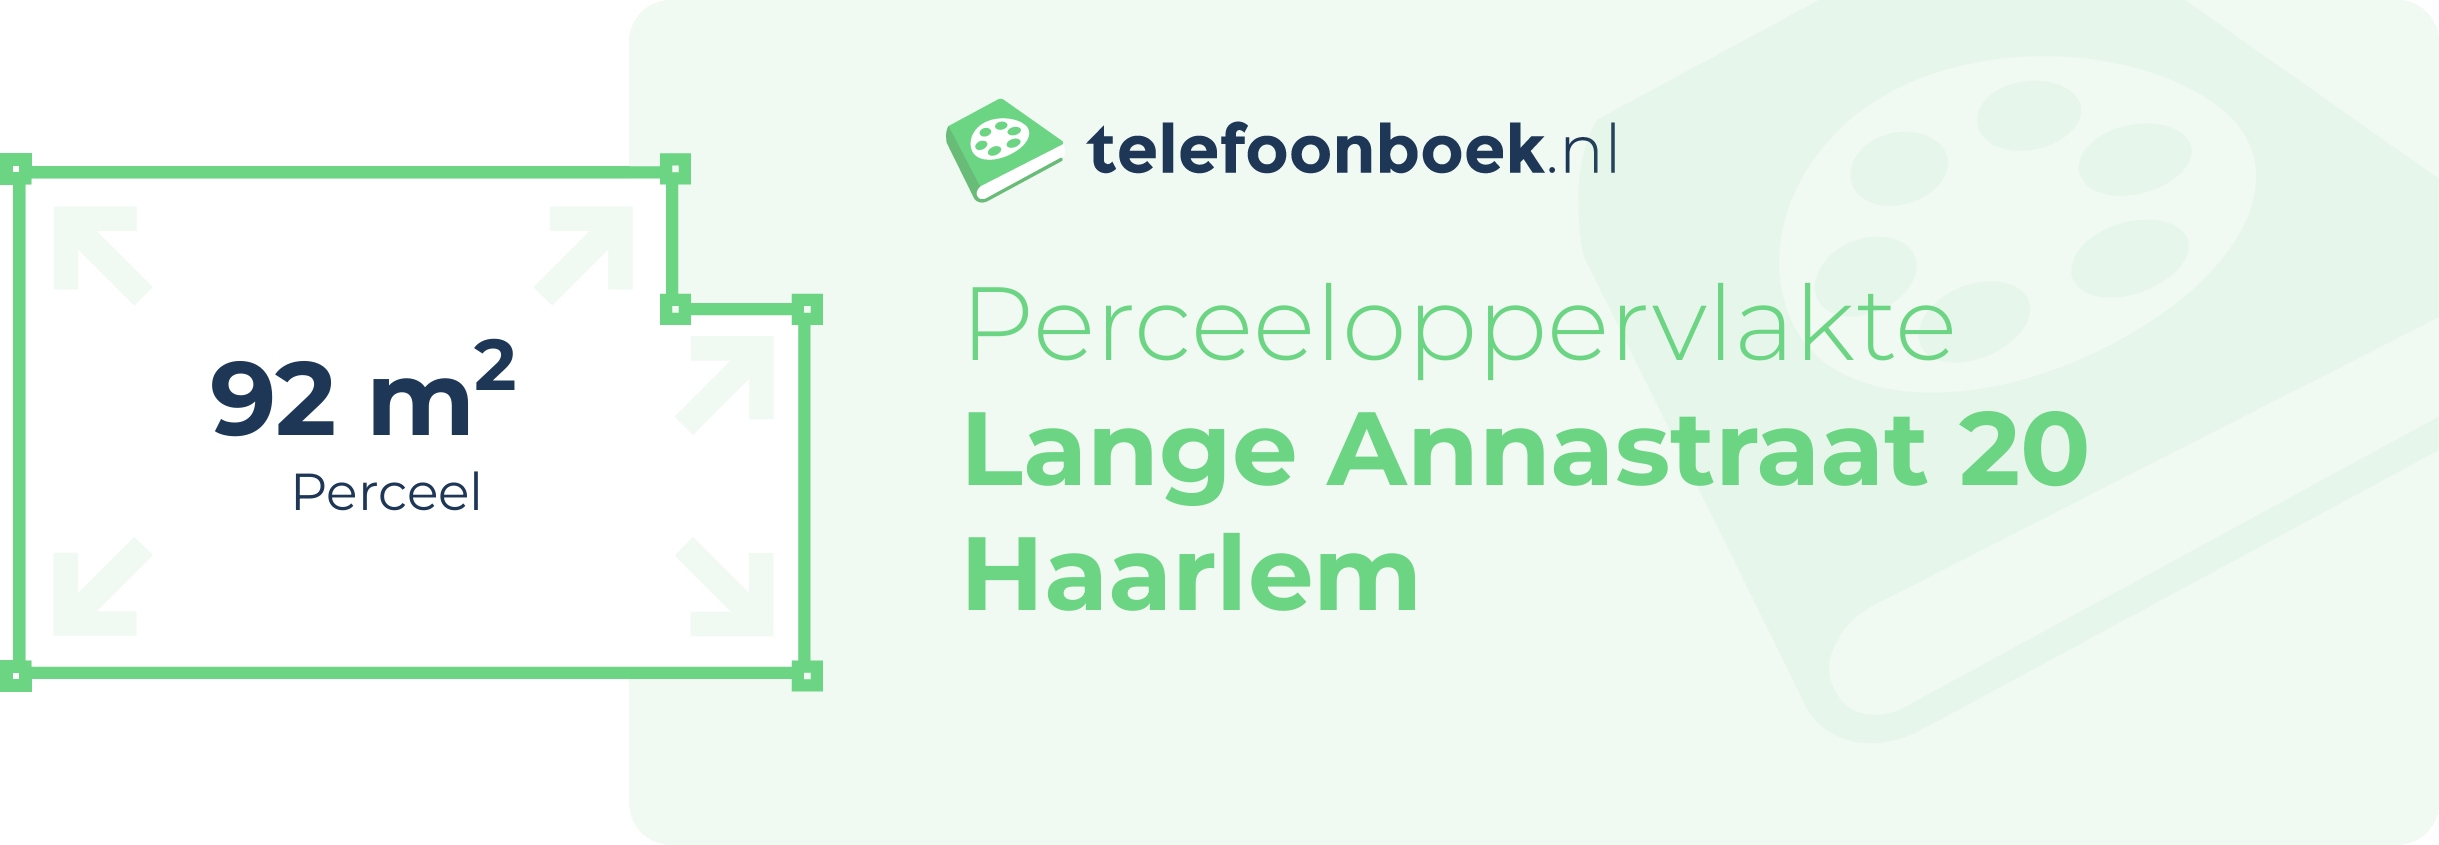 Perceeloppervlakte Lange Annastraat 20 Haarlem